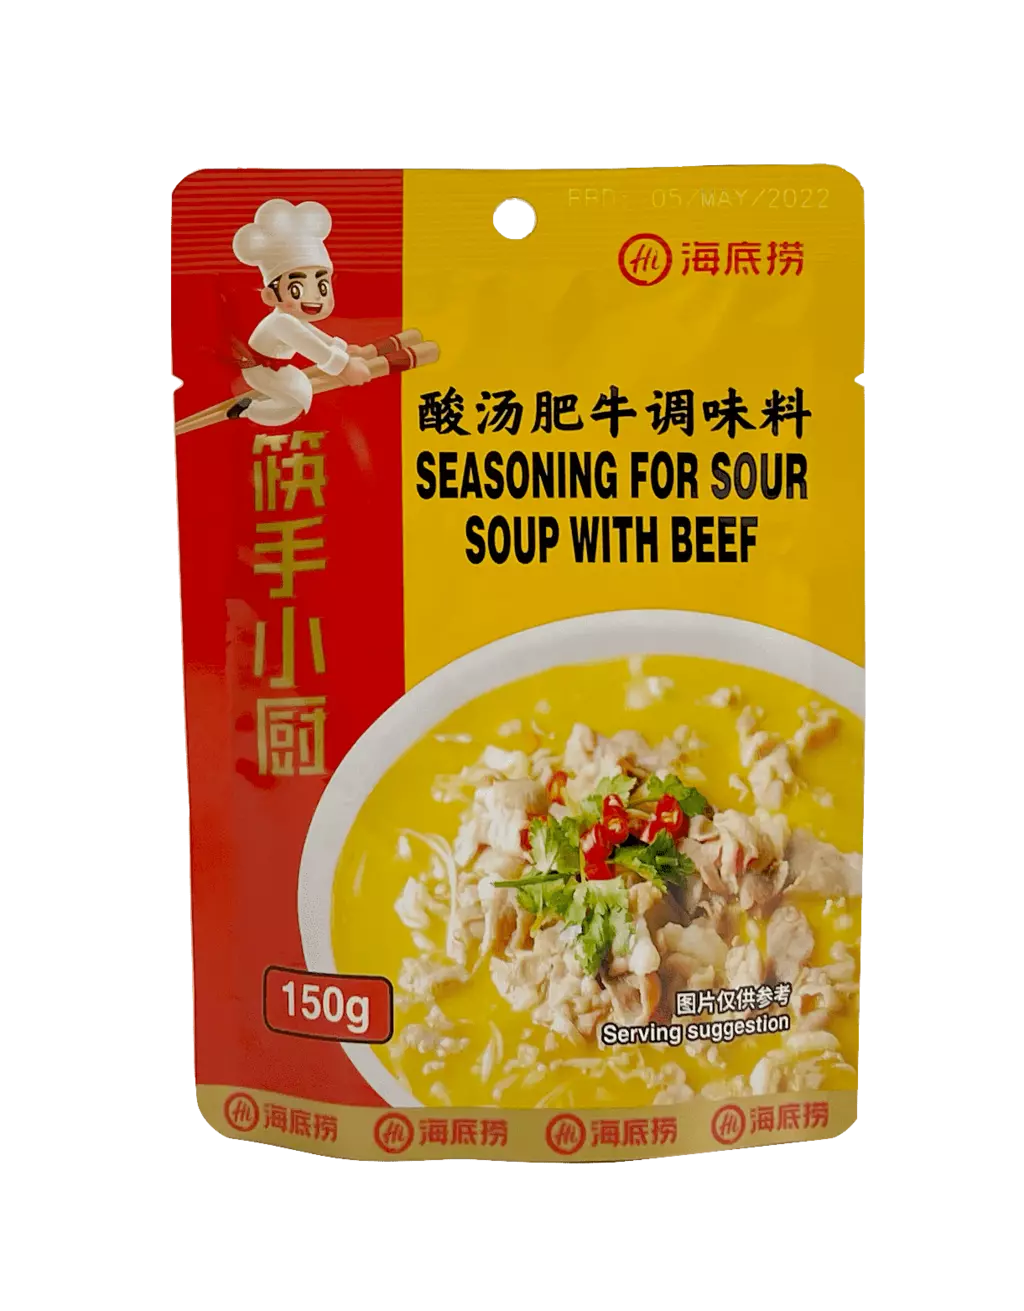 Sur soppa med nötkött krydda 150g STFNTWL Haidilao Kina